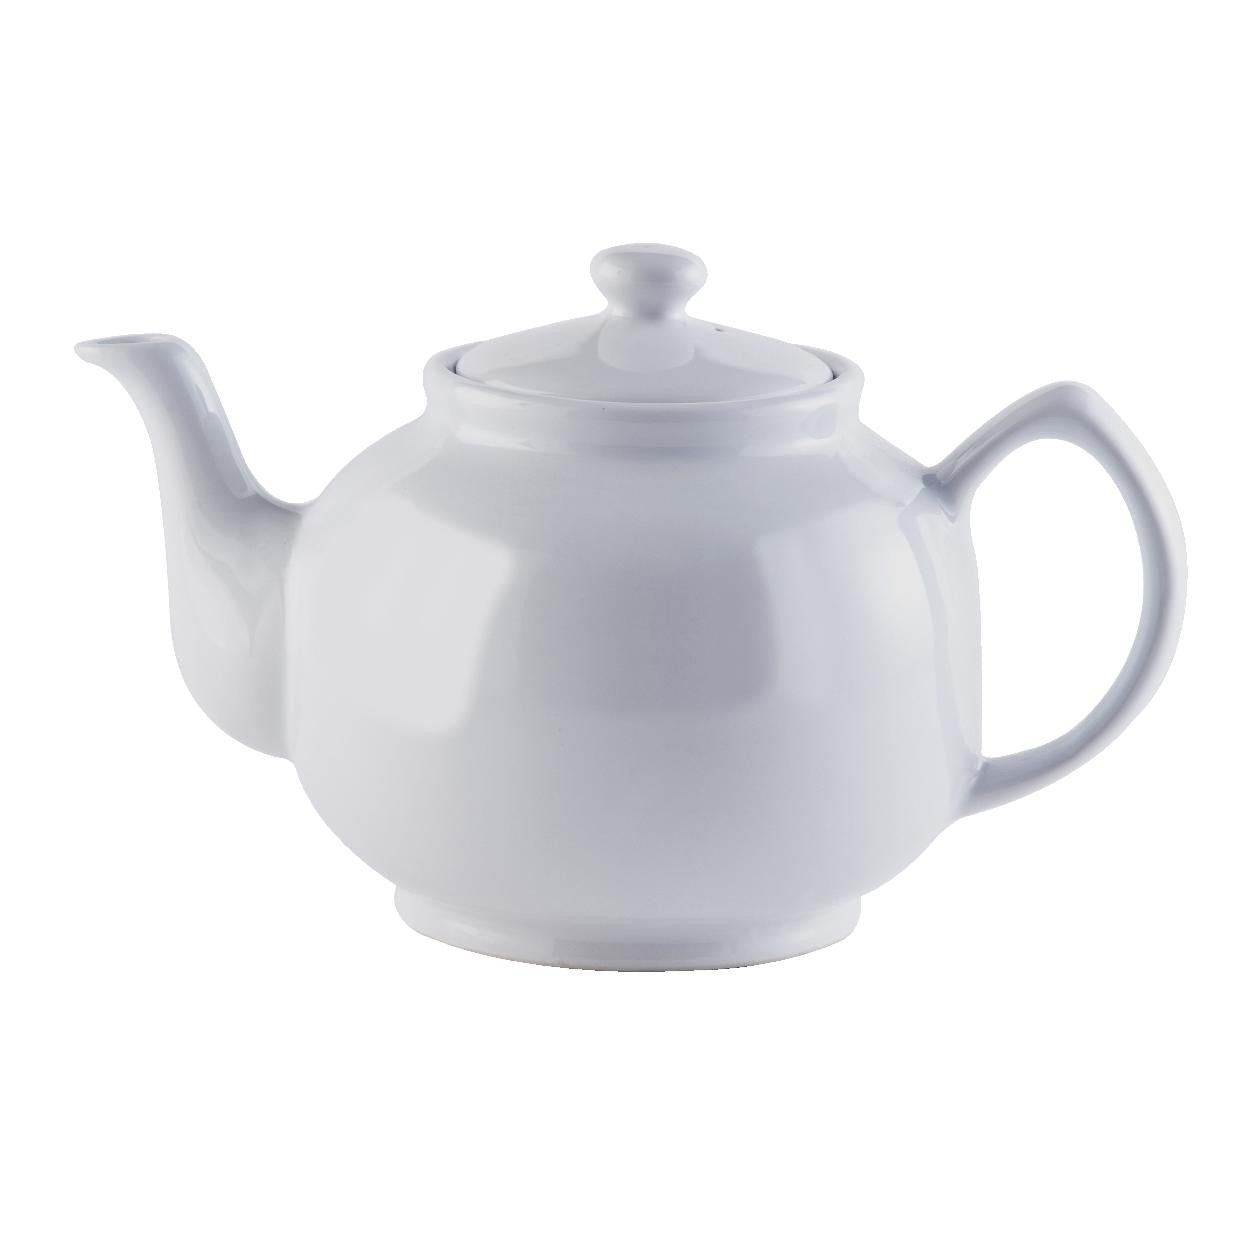 Price & Kensington White Teapot - Various Sizes - Premium Teapots from Price & Kensington - Just $7.25! Shop now at W Hurst & Son (IW) Ltd